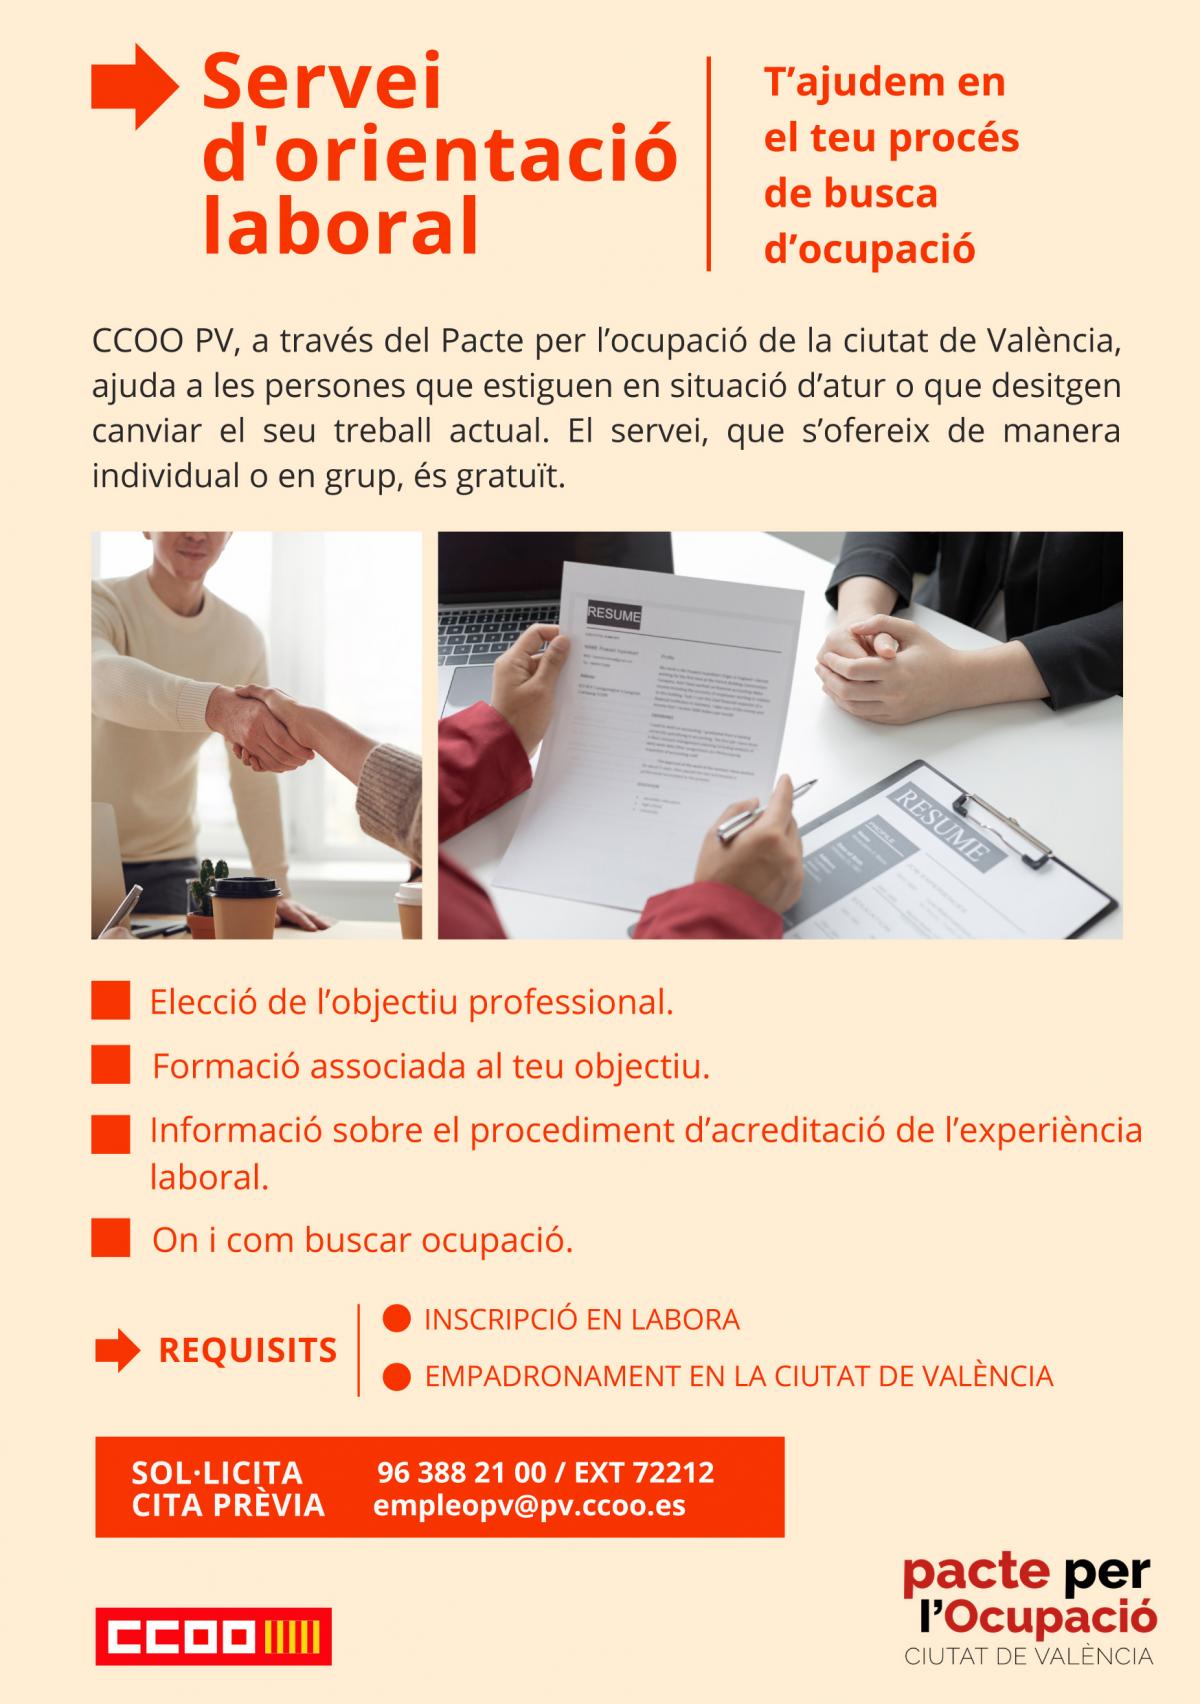 Aquest servei d'orientació professional està emmarcat en les actuacions que CCOO PV té programades dins del VIIé Pacte per l'ocupació a la ciutat de València.